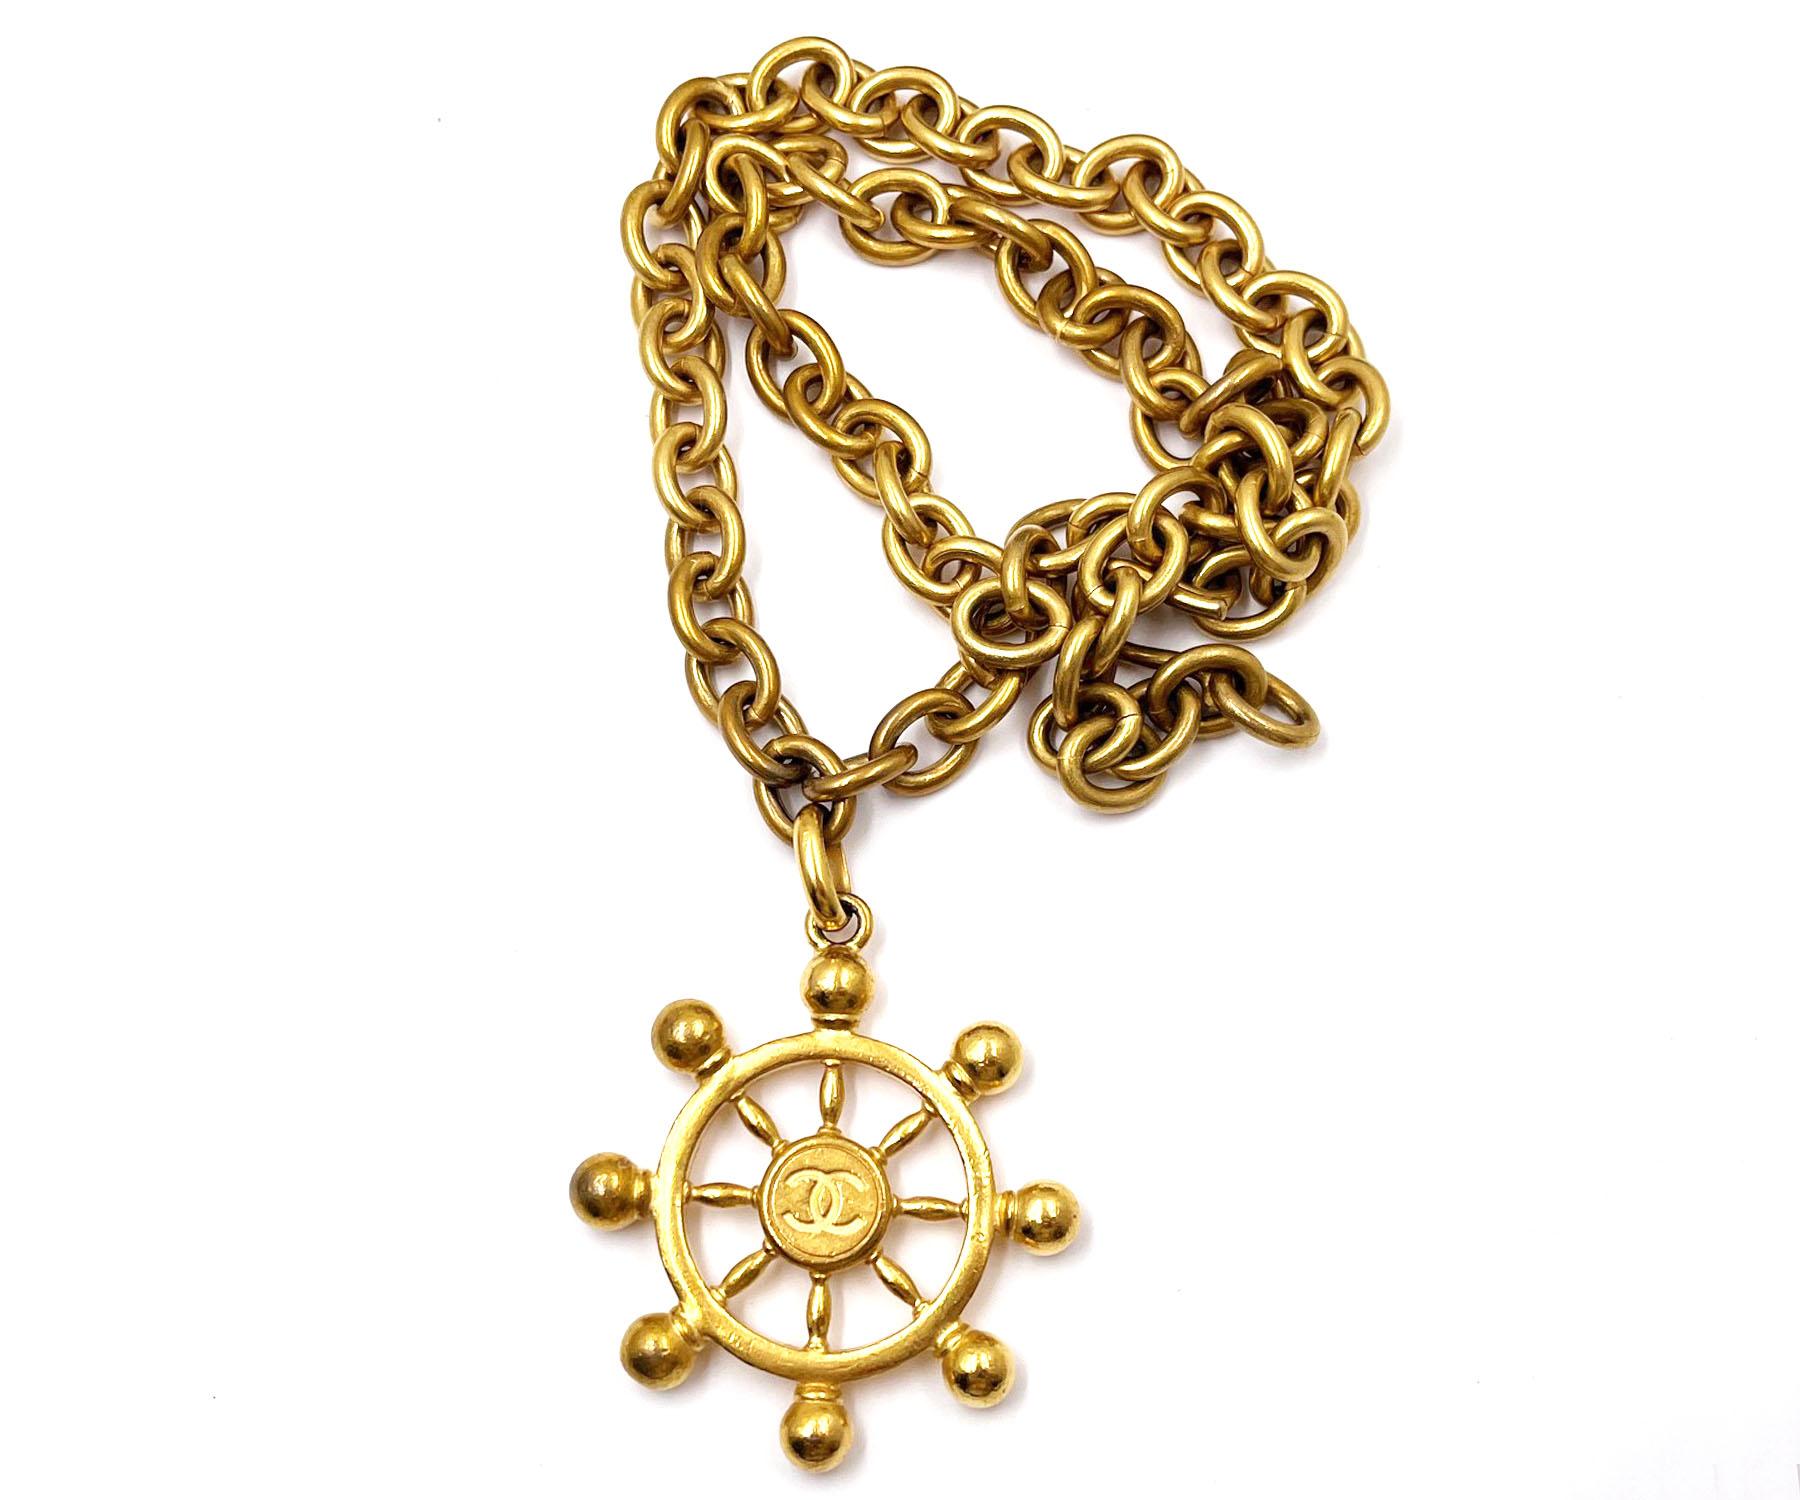 Chanel Rare Vintage Gold Plated CC Large Sailor Wheel Long Chain Necklace

*marqué 94
* Fabriqué en France
* Livré avec la boîte d'origine

-Il mesure environ 28